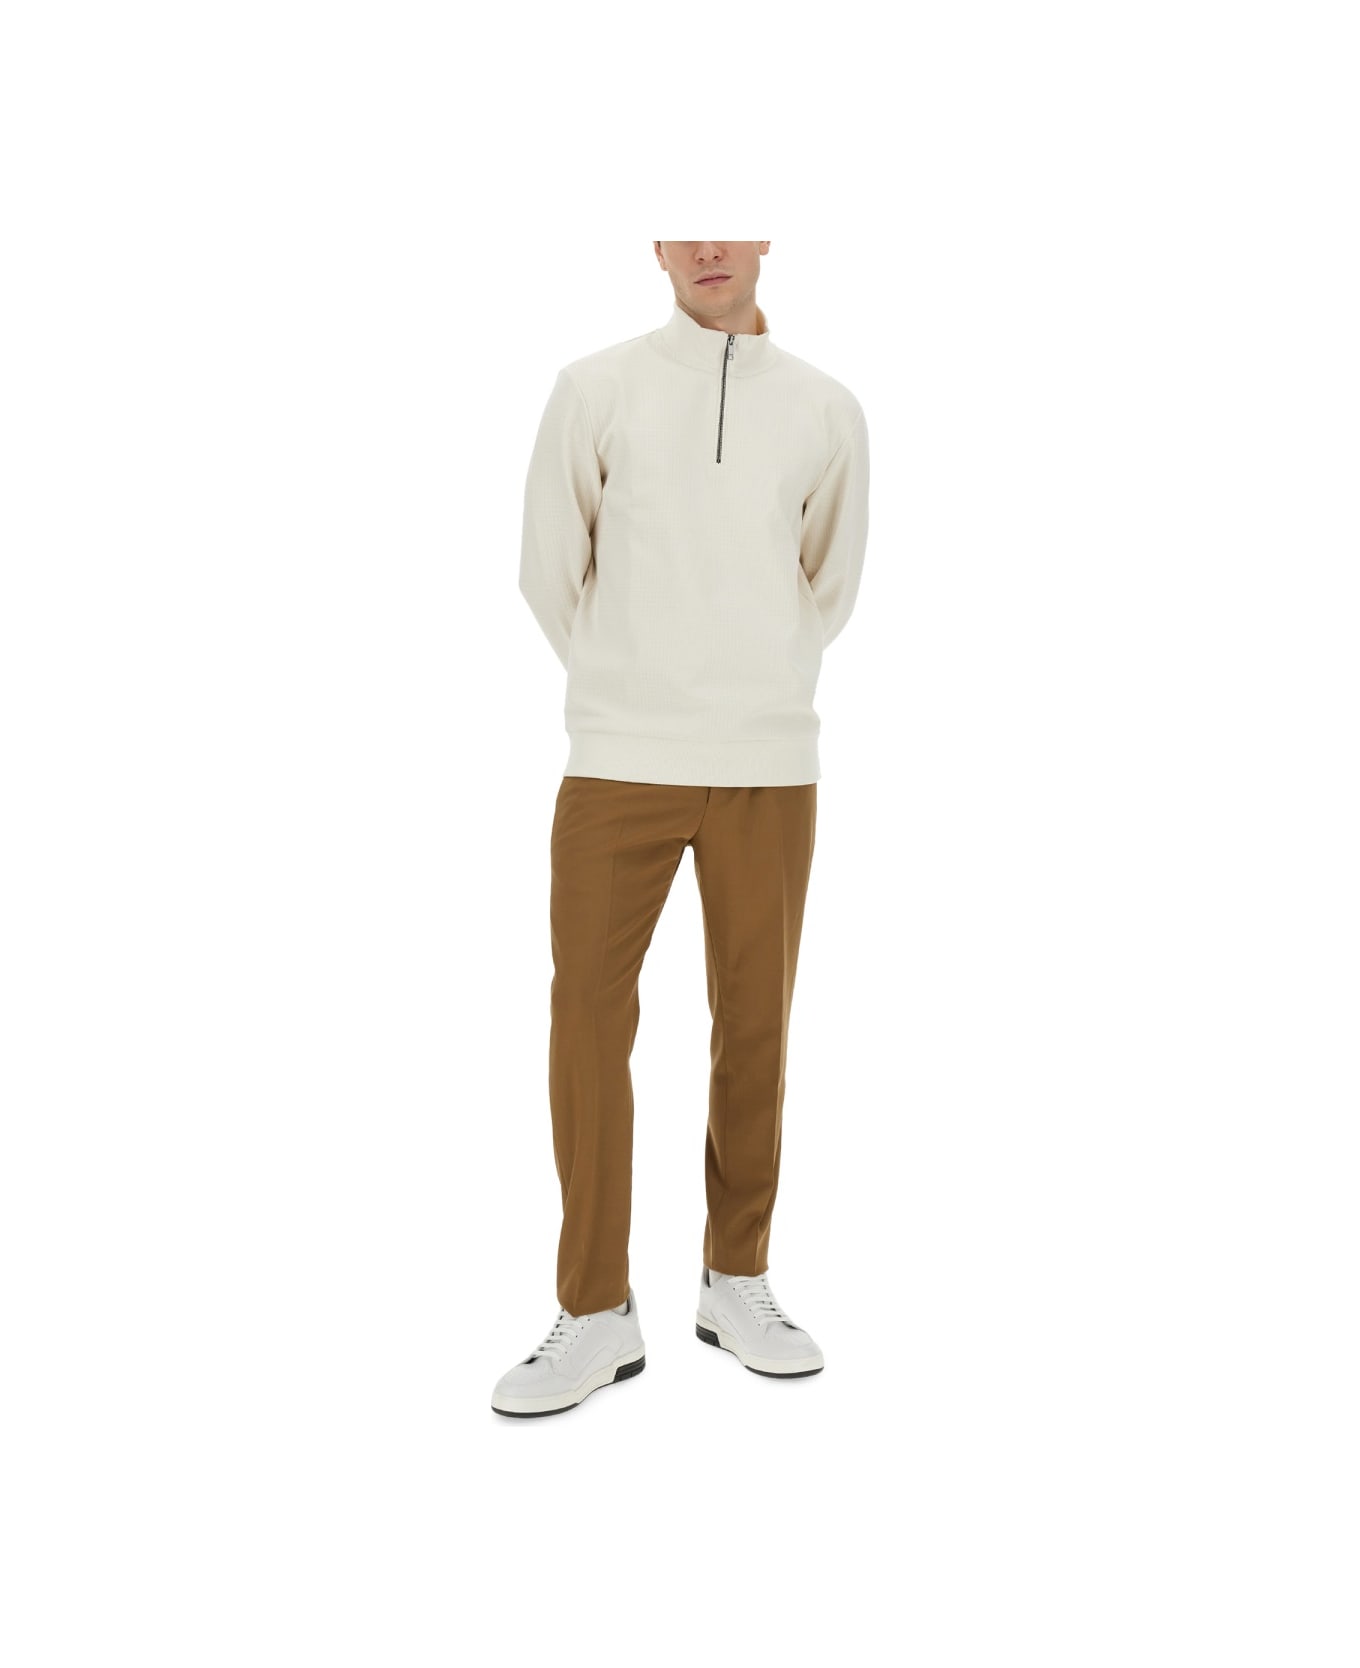 Hugo Boss Sweatshirt With Collar And Zipper - WHITE